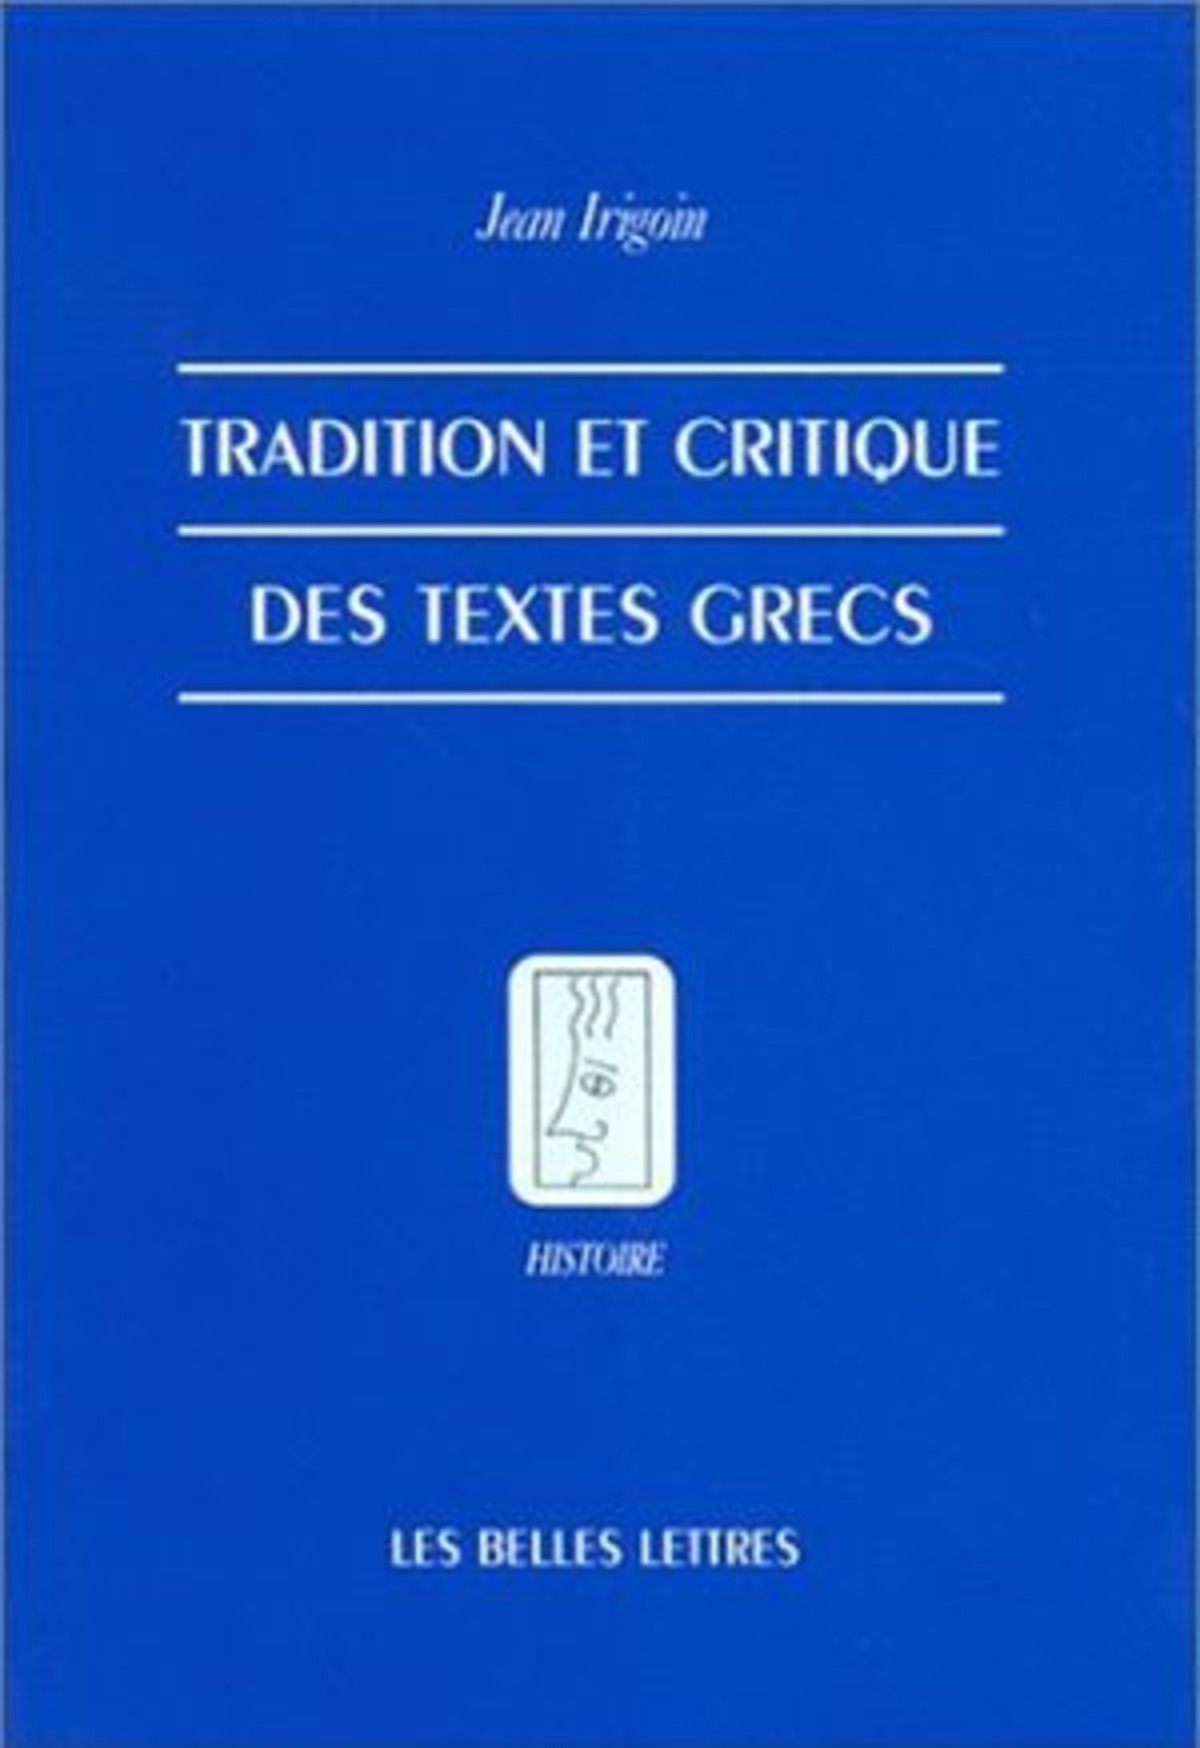 Tradition et critique des textes grecs